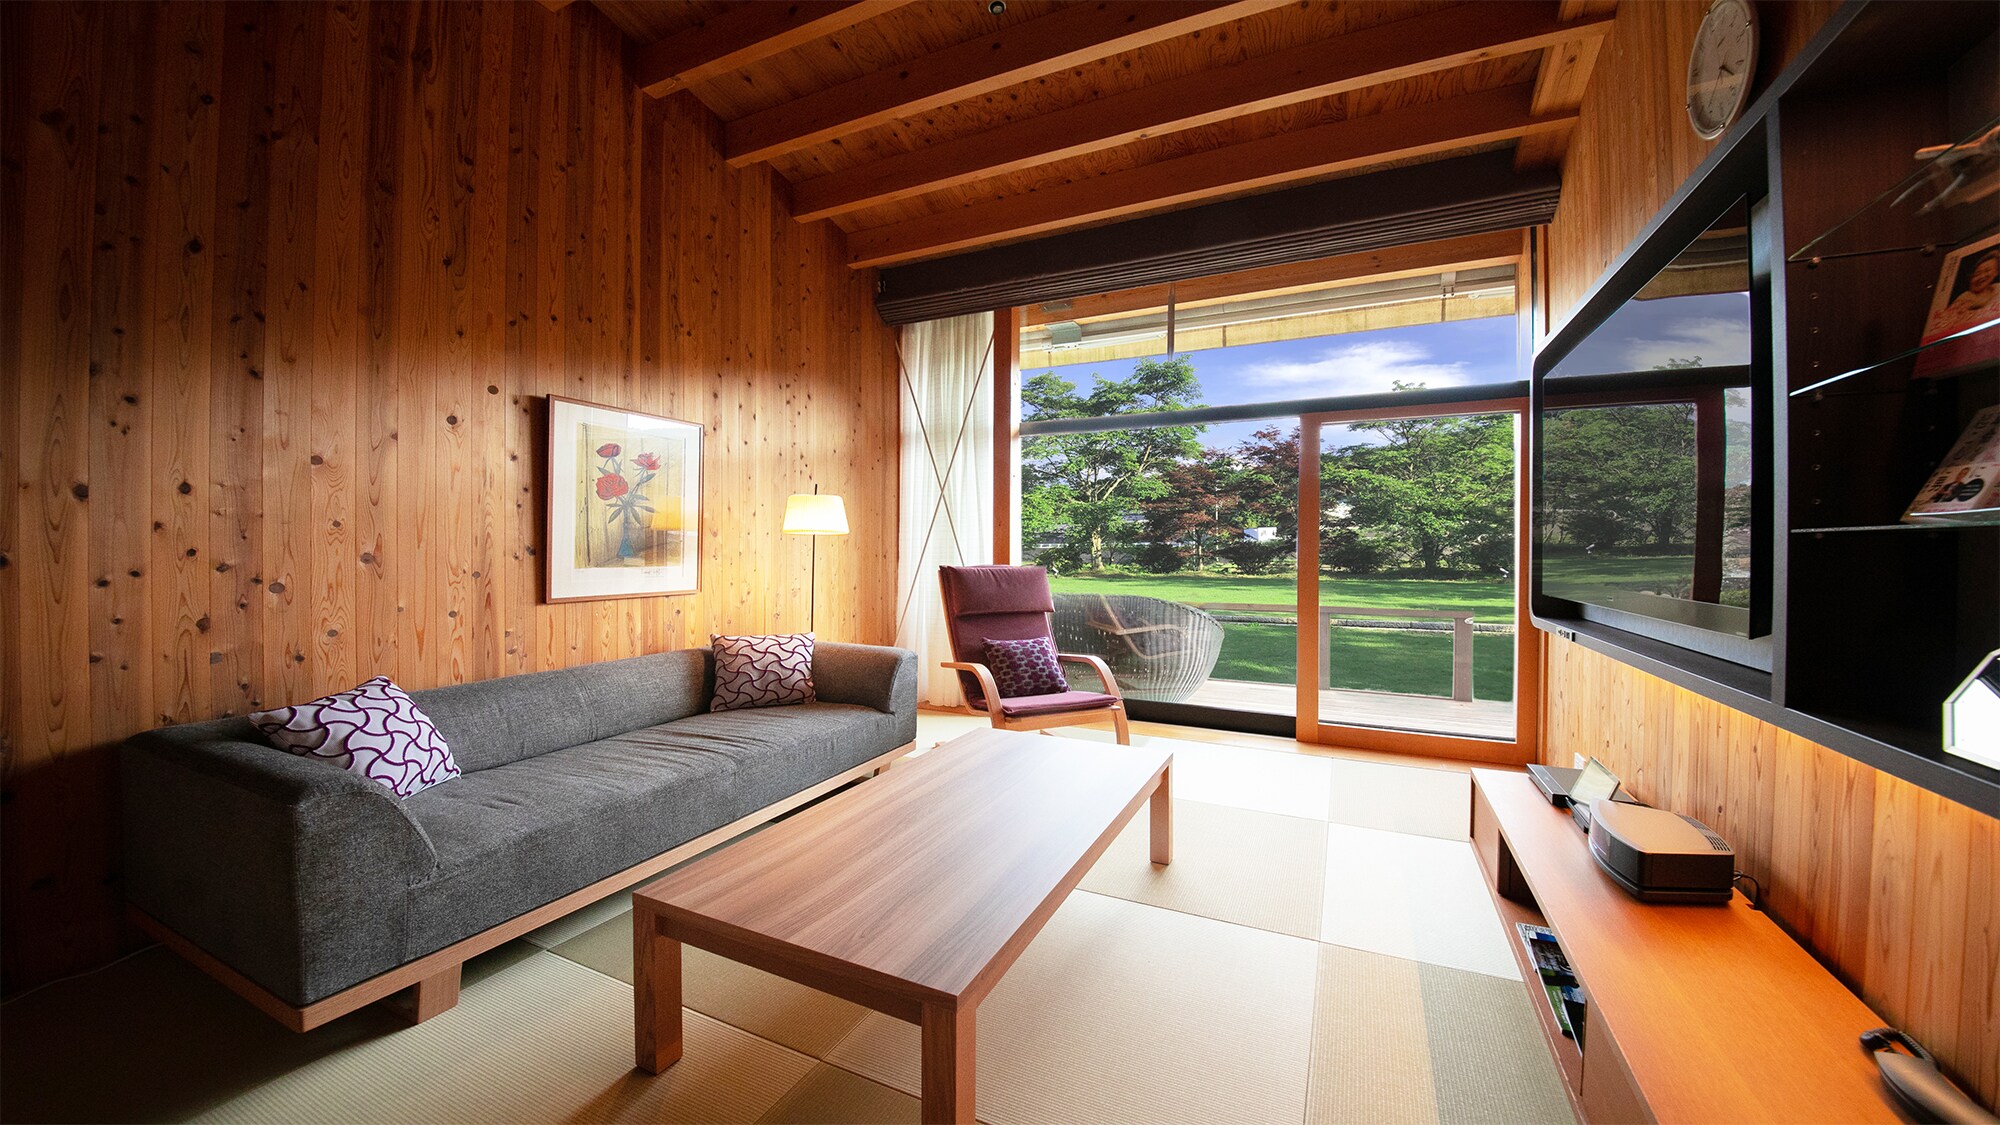 ■ ห้องชุด-การใช้ชีวิตแบบญี่ปุ่น ■ ได้รับรางวัลการออกแบบที่ดีประจำปี 2558 & rdquo; การออกแบบพื้นที่ฟิวชั่นญี่ปุ่น - ตะวันตก & rdquo;